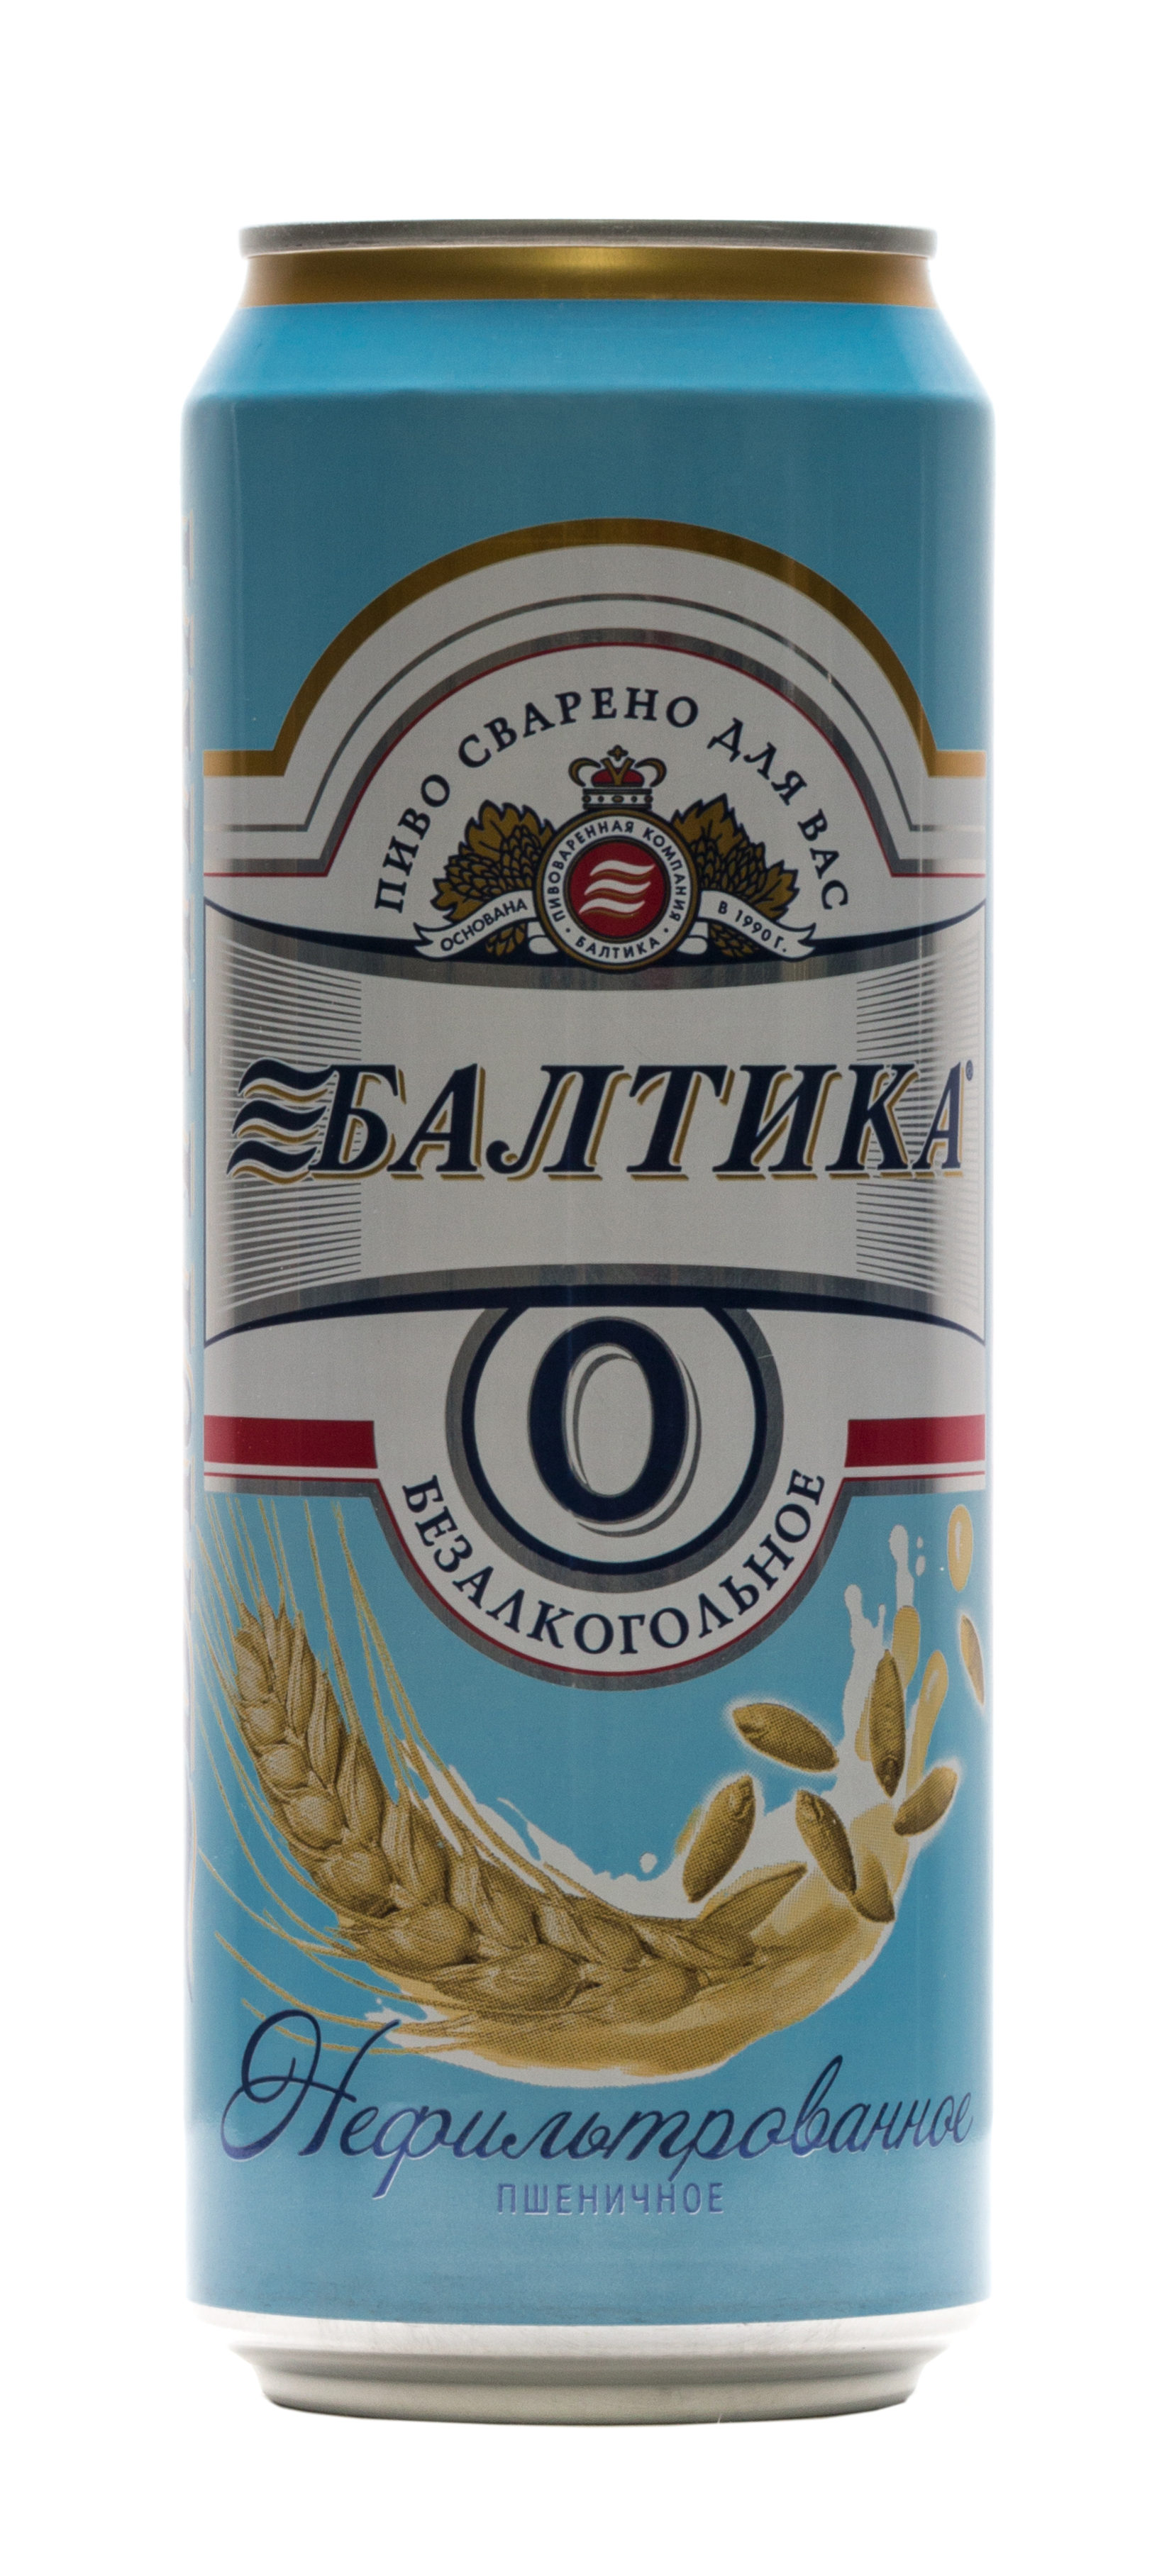 Пшеничное безалкогольное пиво. Пиво Балтика №0 пшеничное нефильтрованное, 0,45л. Пиво Балтика 0 безалкогольное пшеничное. Пиво Балтика пшеничное нефильтрованное. Пивной напиток Балтика 0 безалкогольное пшеничное 0.45л.